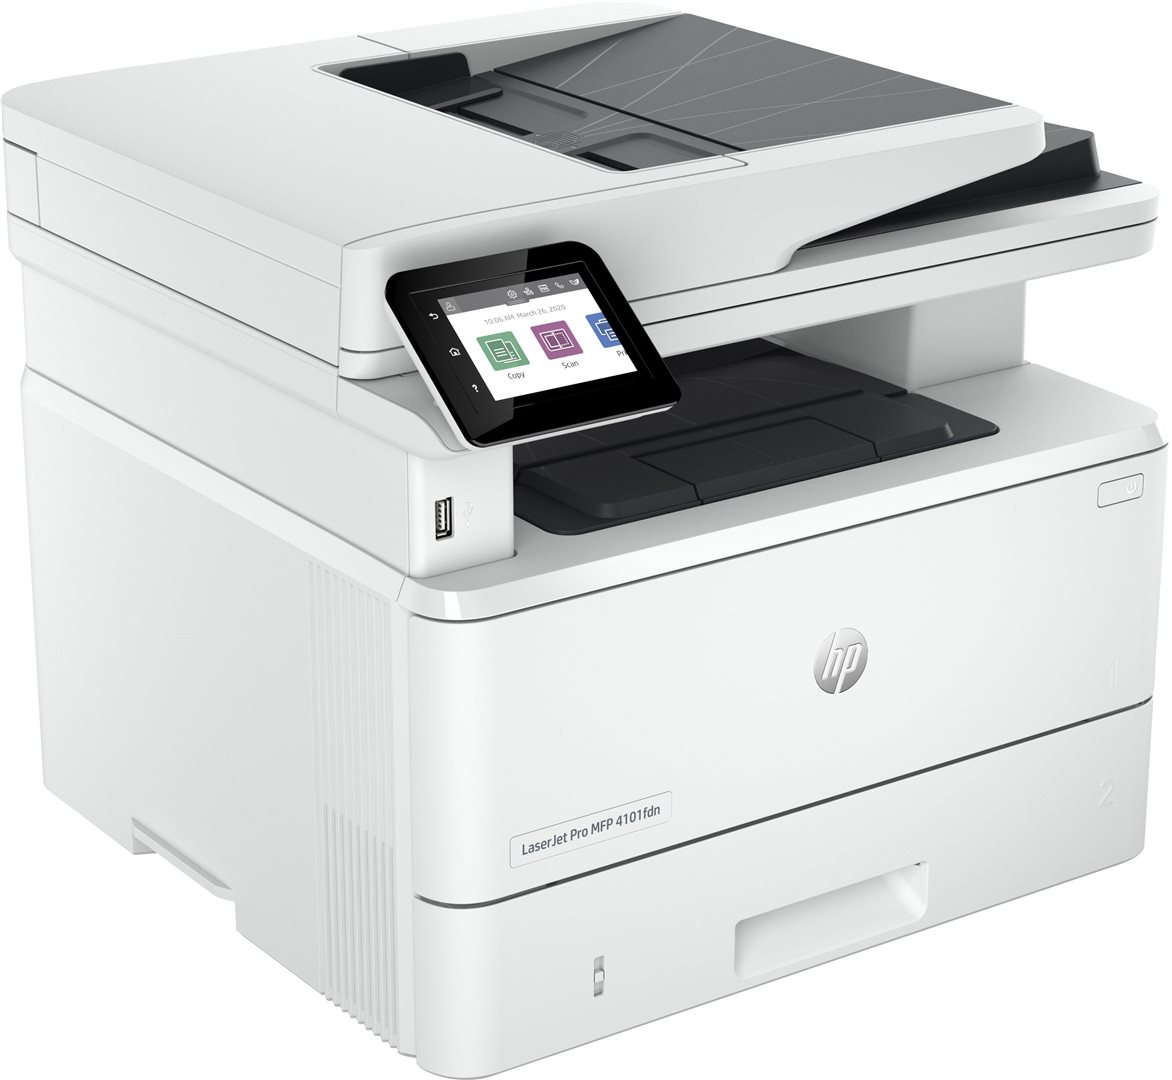 Tiskárna HP LaserJet Pro MFP 4102fdw